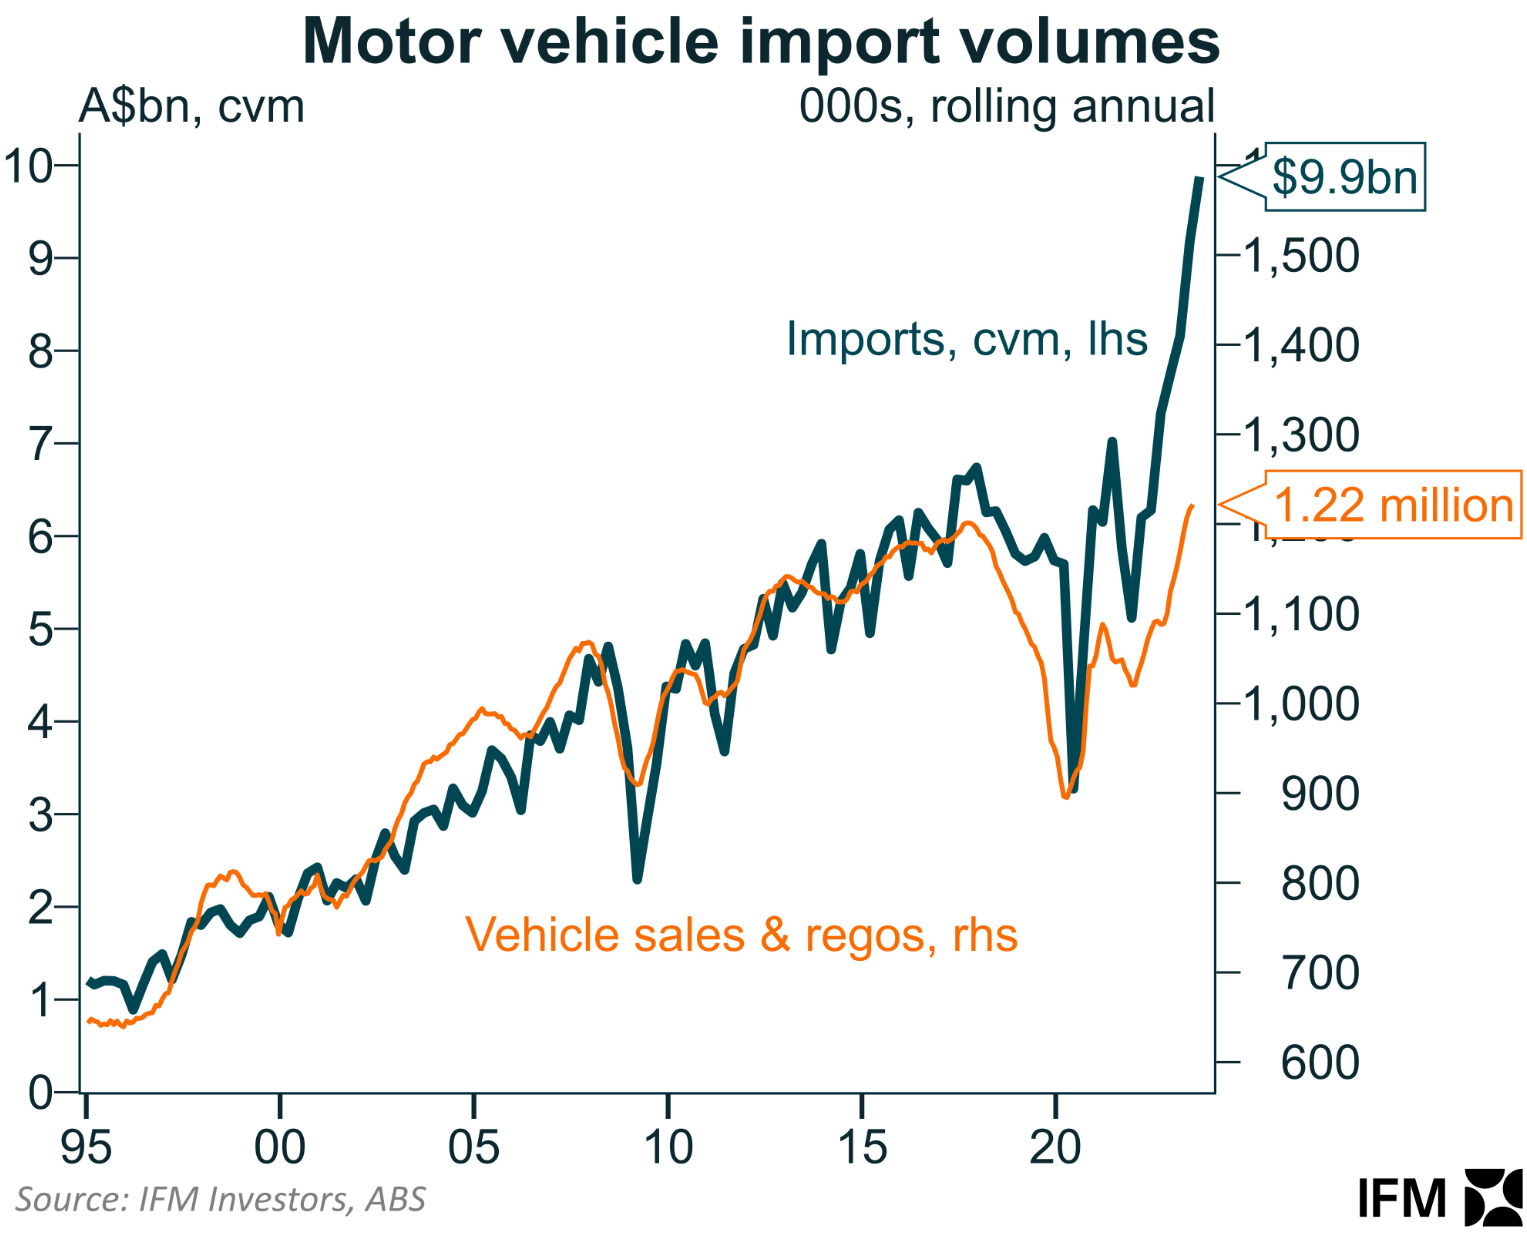 Motor vehicle imports